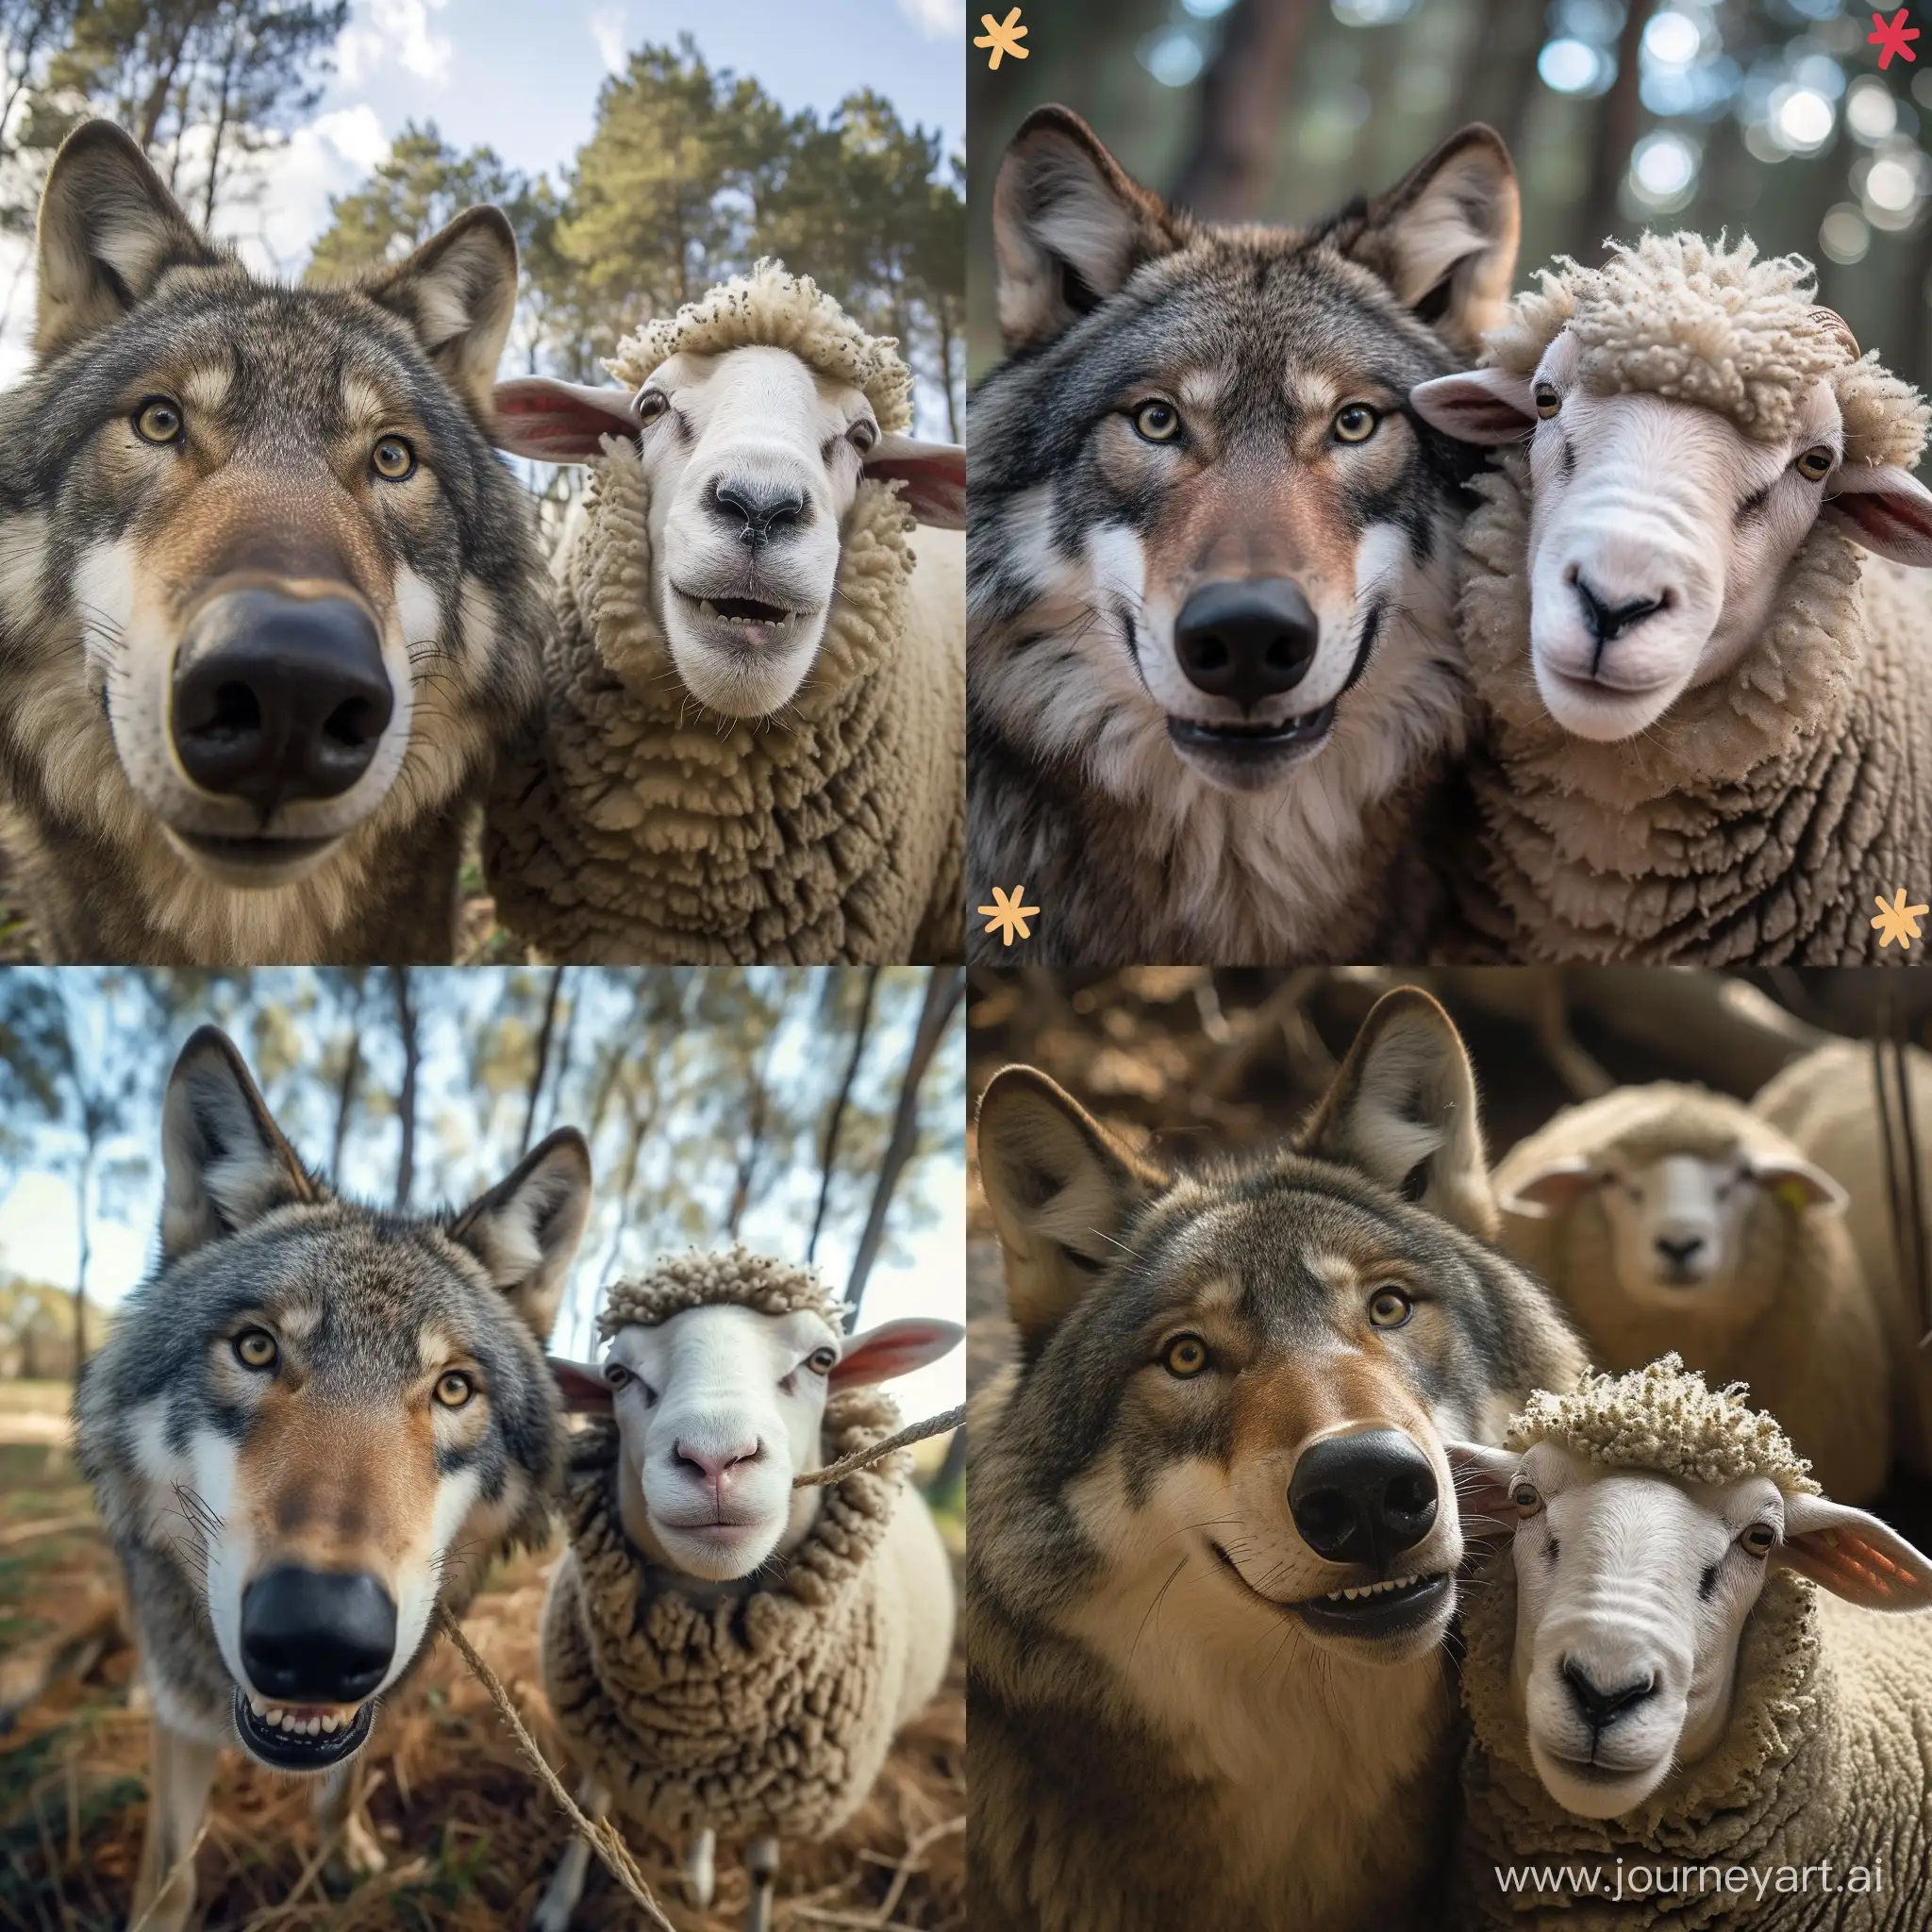 Joyful-Wolf-and-Sheep-Selfie-Heartwarming-Moment-Captured